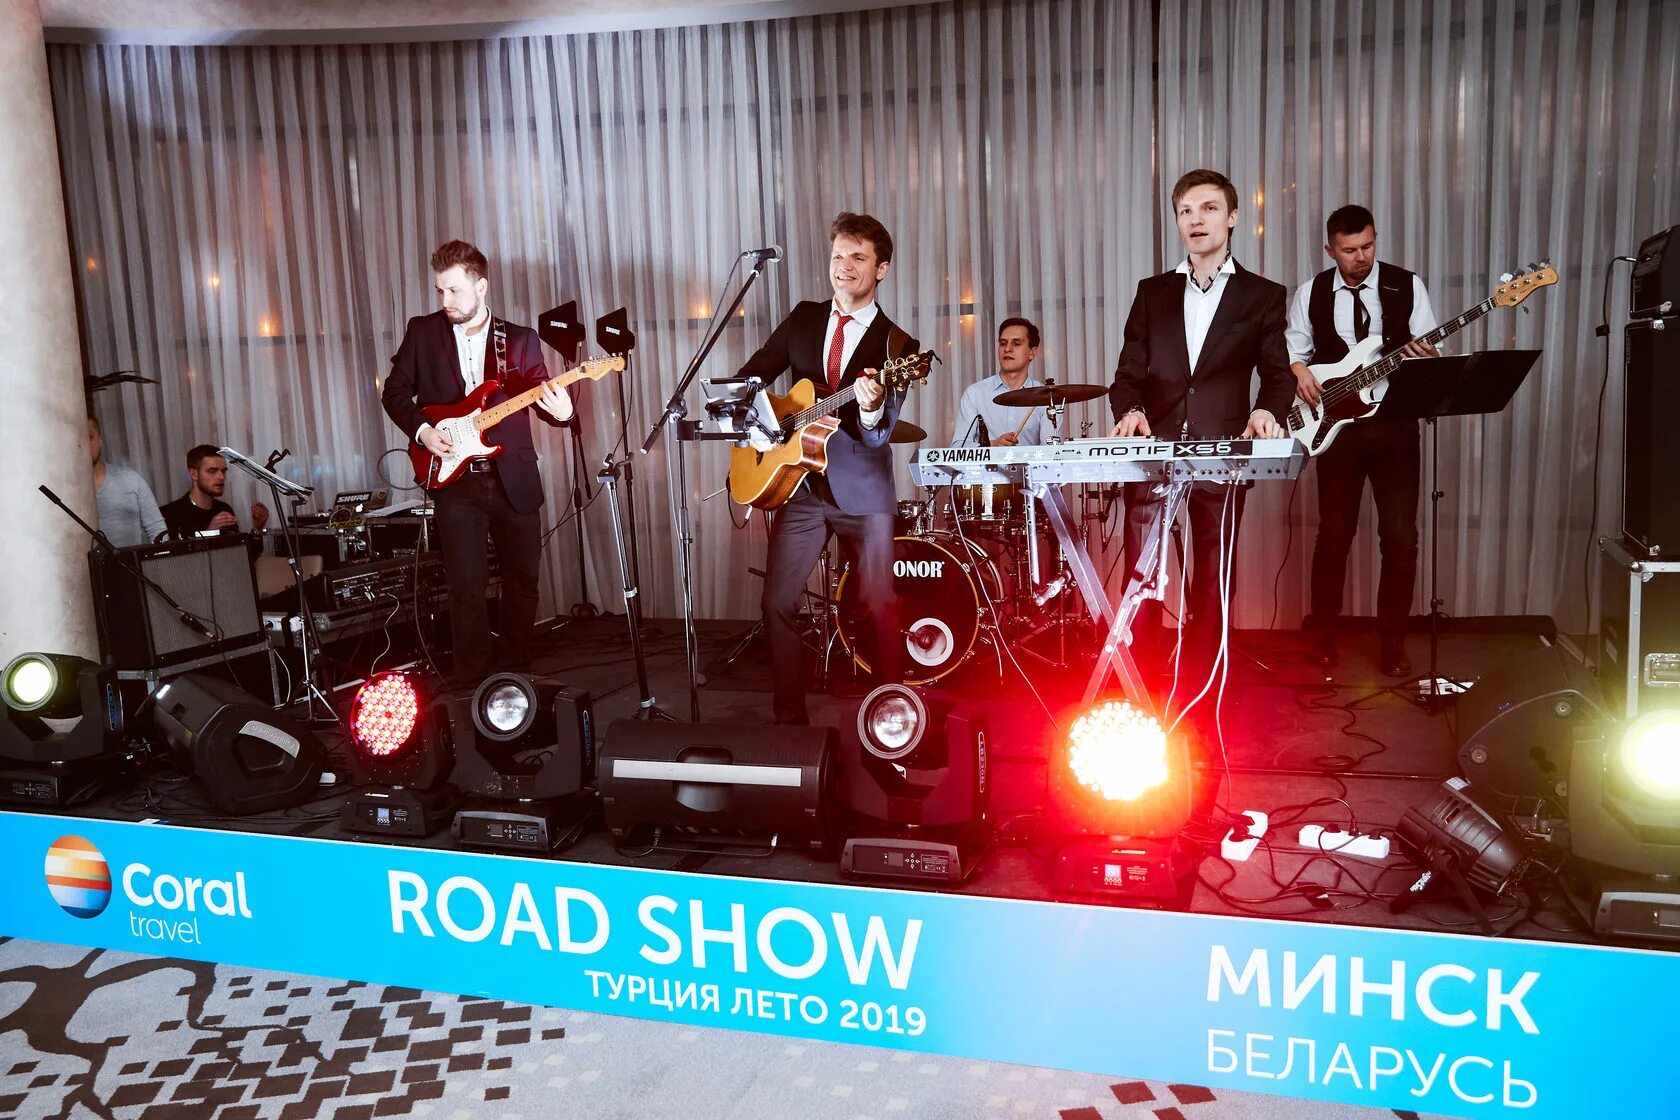 Роуд шоу. Road show в Турции. Музыкальный Road show. Road show Turkey Анекс. Роад шоу с турецкими отелями.